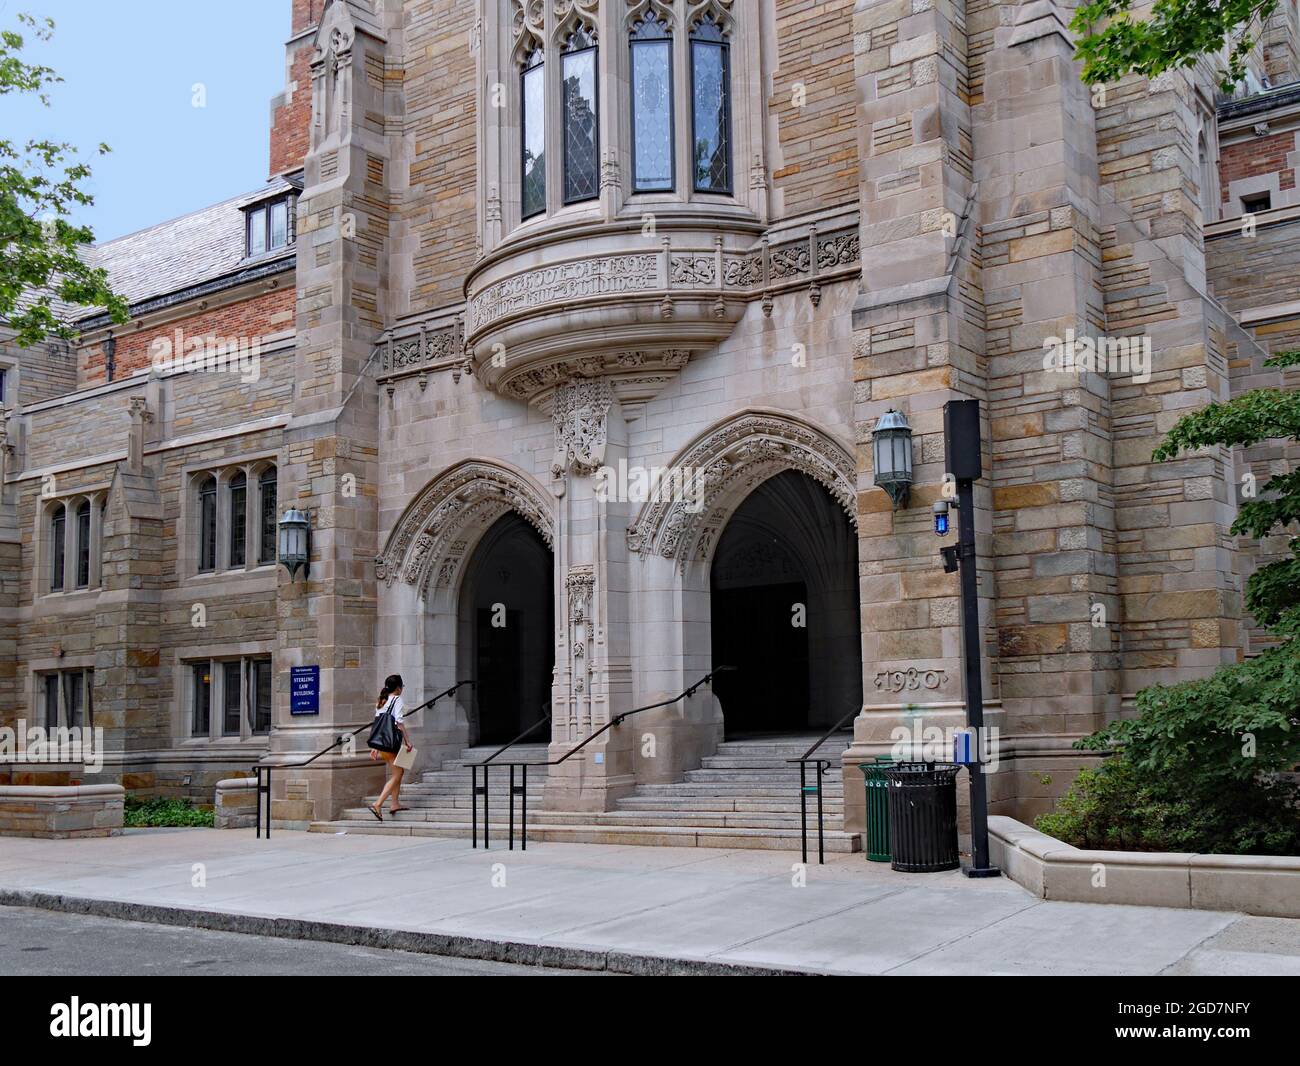 New Haven, Connecticut - 25. Juni 2015: Gebäude im gotischen Stil, in dem die Juristische Bibliothek der Yale University untergebracht ist Stockfoto